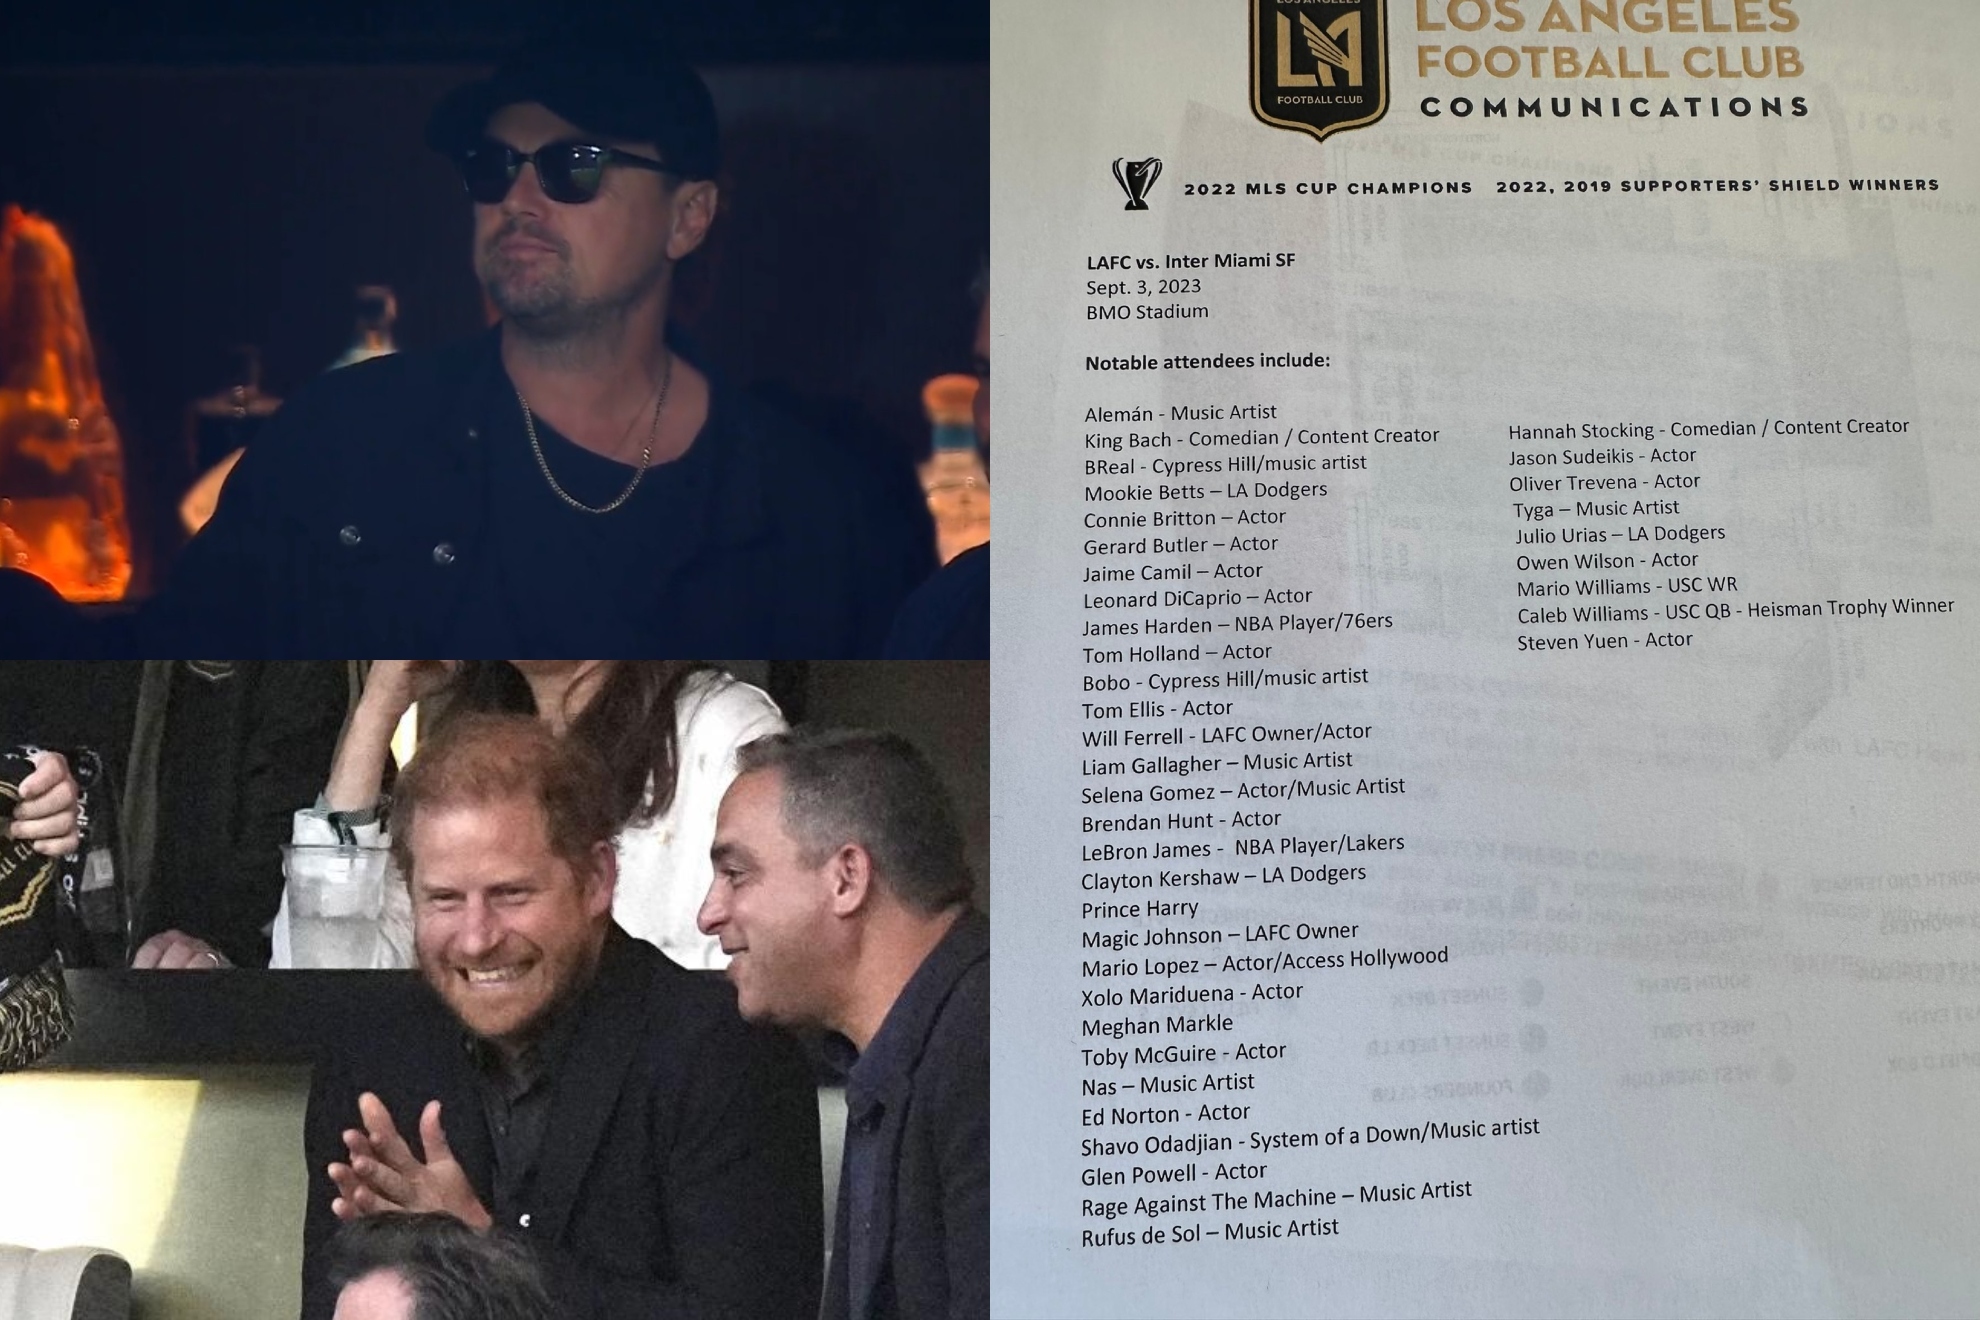 La impresionante lista de 'celebrities' que fueron a ver a Messi en Los Ángeles: DiCaprio, LeBron, el Príncipe Harry...